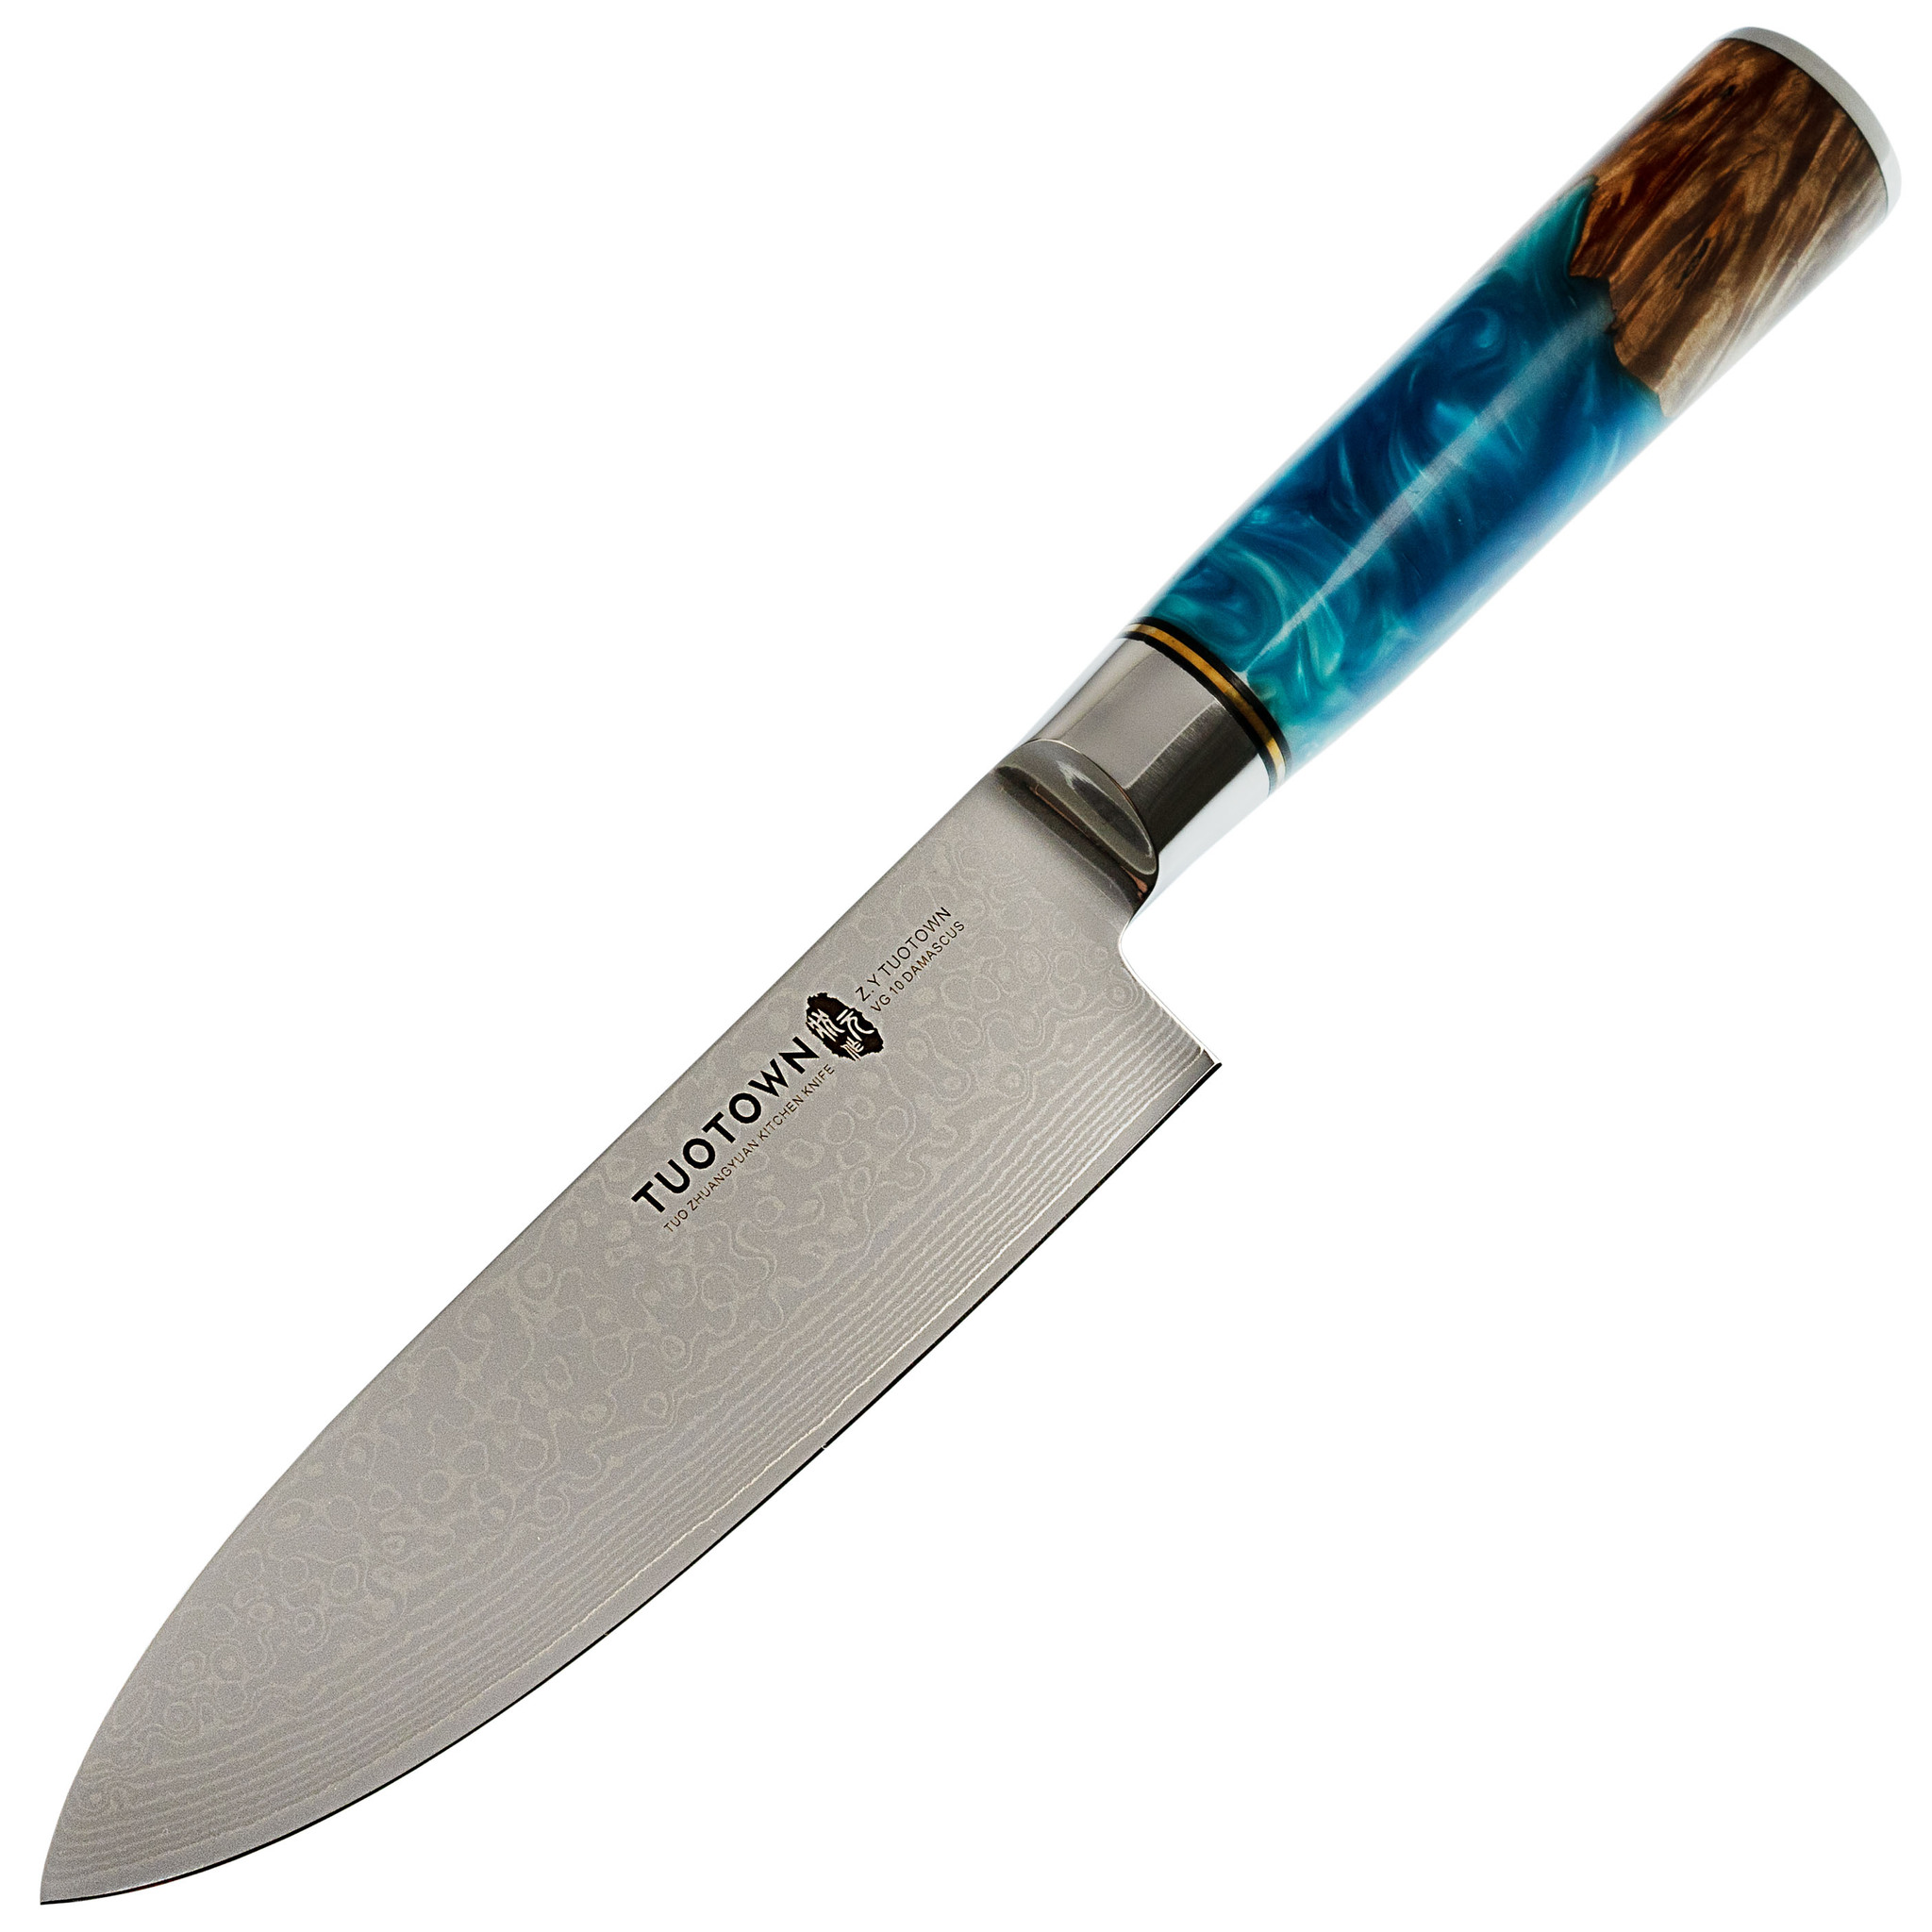 Нож кухонный Tuotown DM003, сталь VG-10 Damascus, рукоять дерево/эпоксидка складной нож civivi mini sandbar сталь damascus micarta